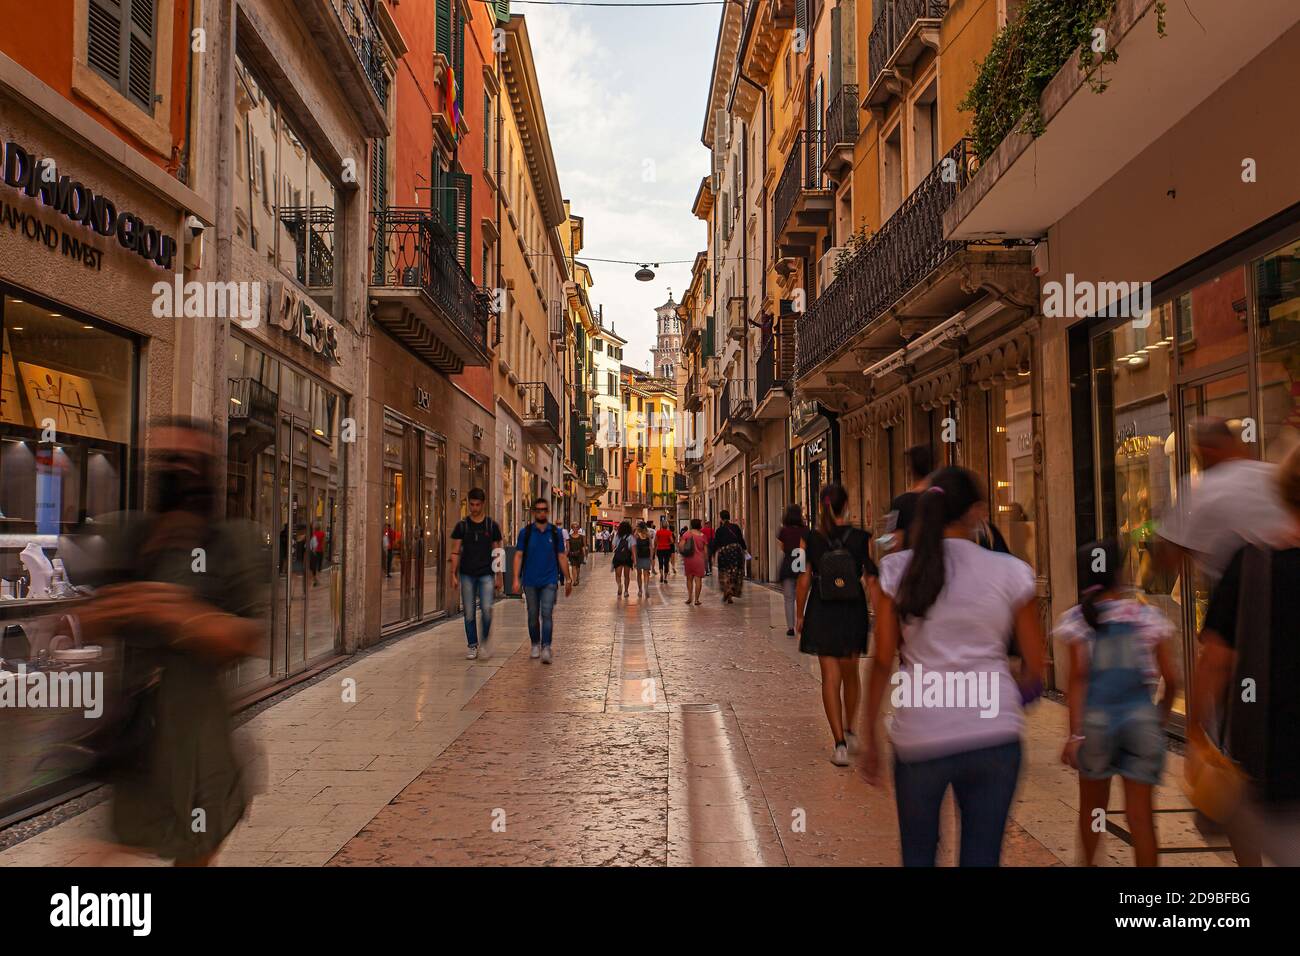 VERONA, ITALY 10 SEPTEMBER 2020: View of Mazzini street in Verona in Italy Stock Photo